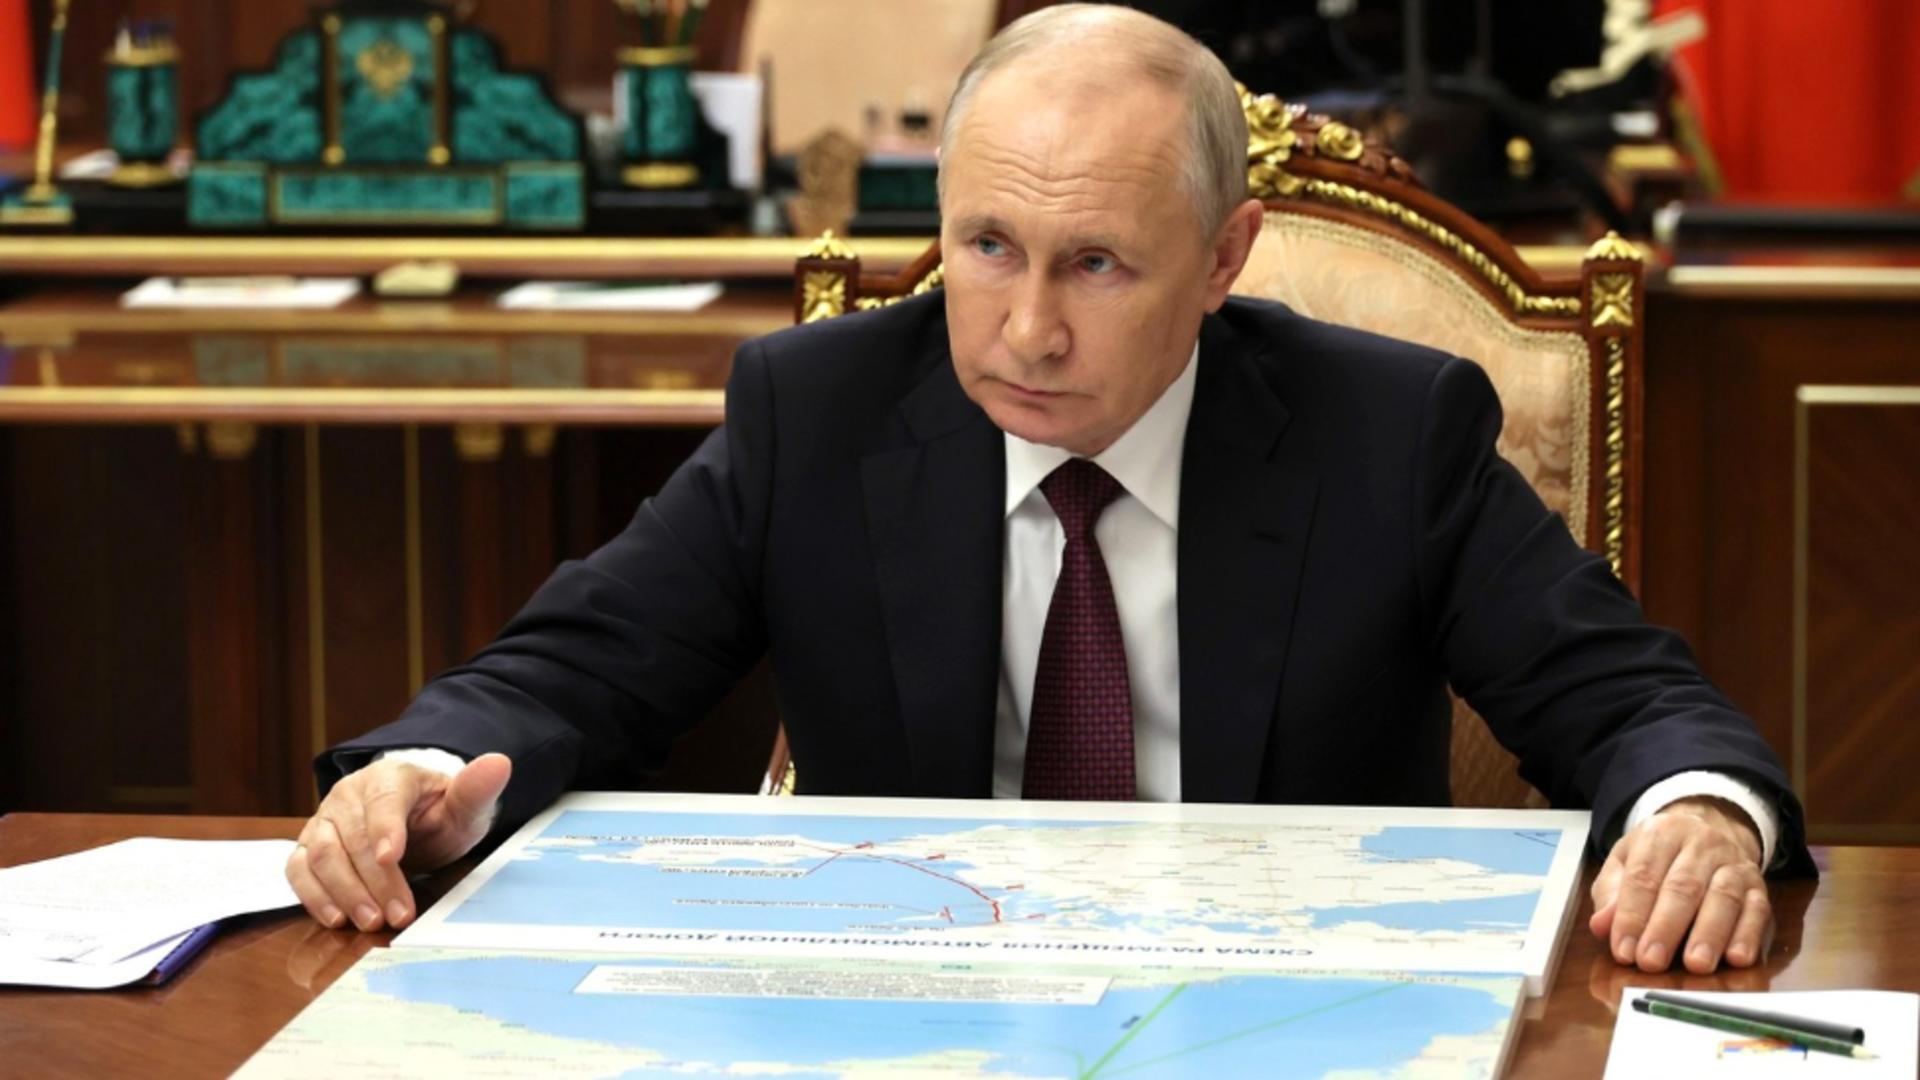 Război în Ucraina, ziua 749: Putin spune că Rusia este pregătită pentru un război nuclear, dar nu se grăbește spre el